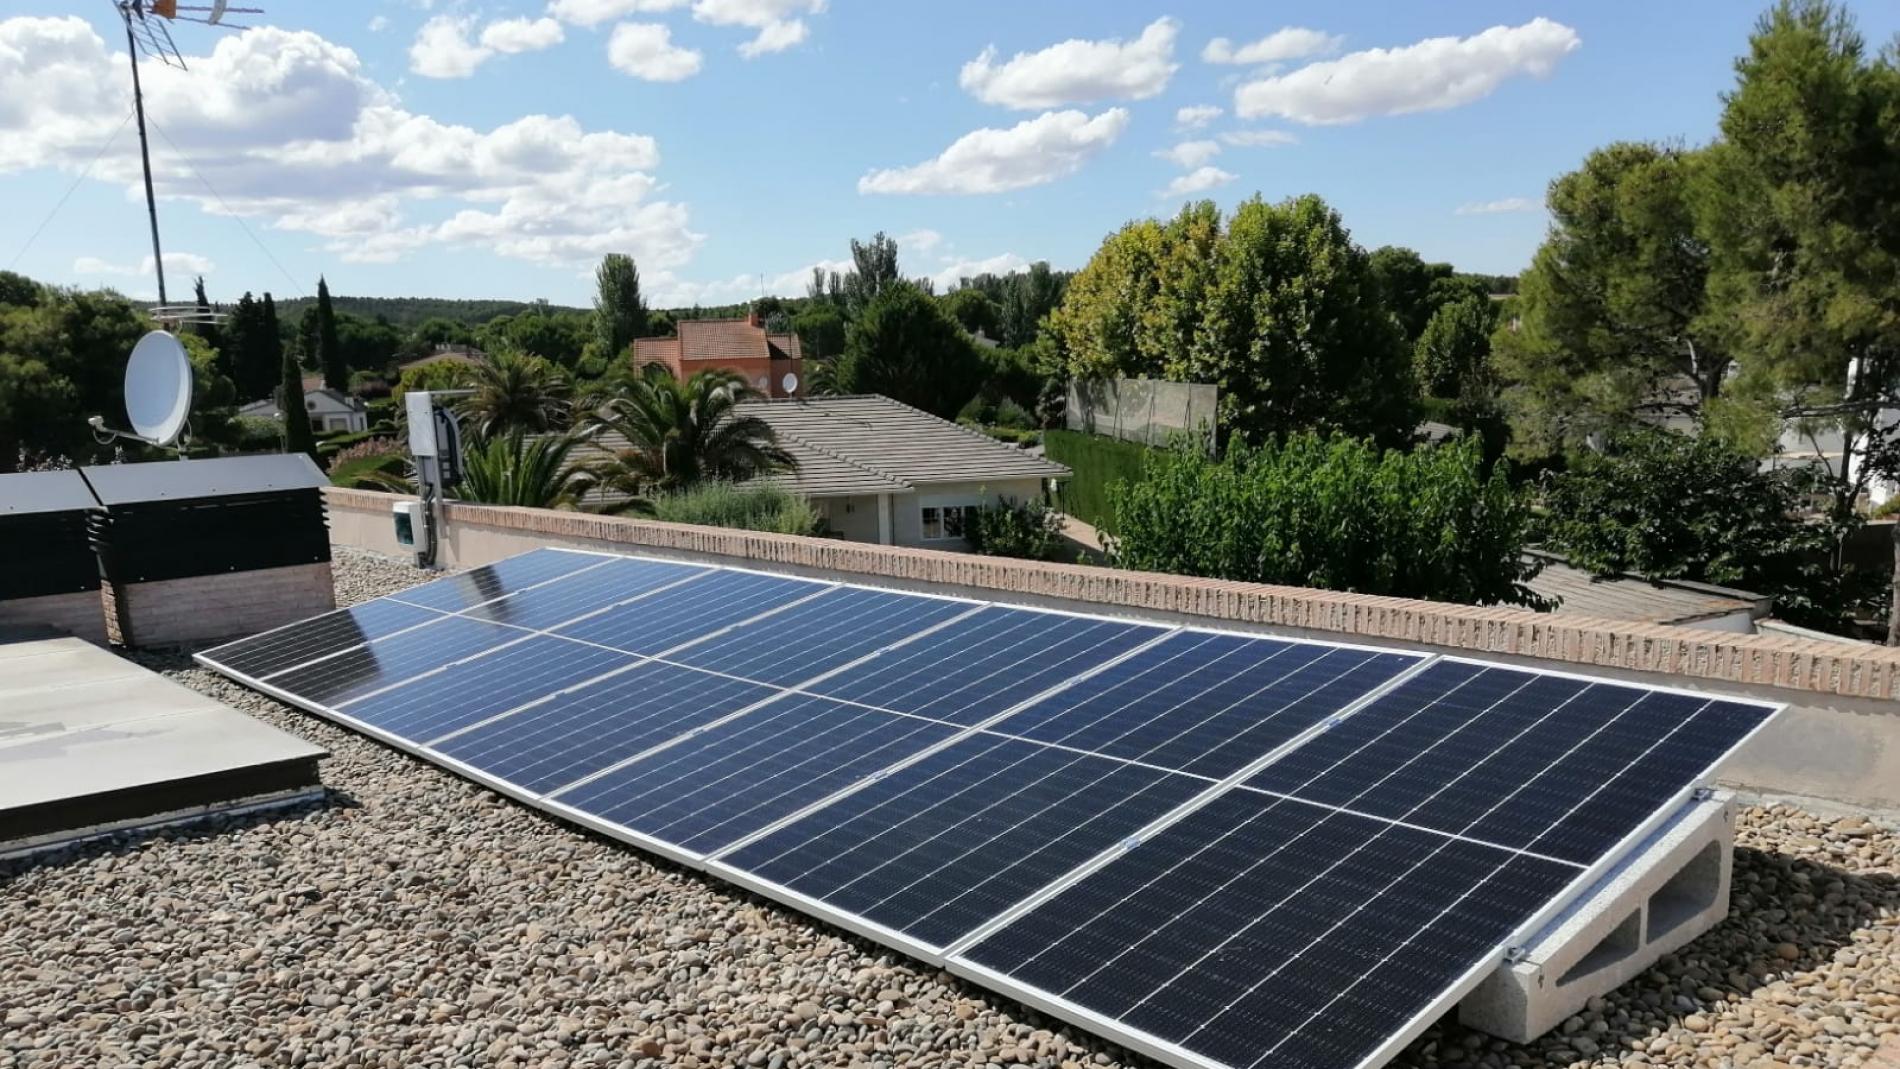 Se puede almacenar energía en baterías sin paneles solares?